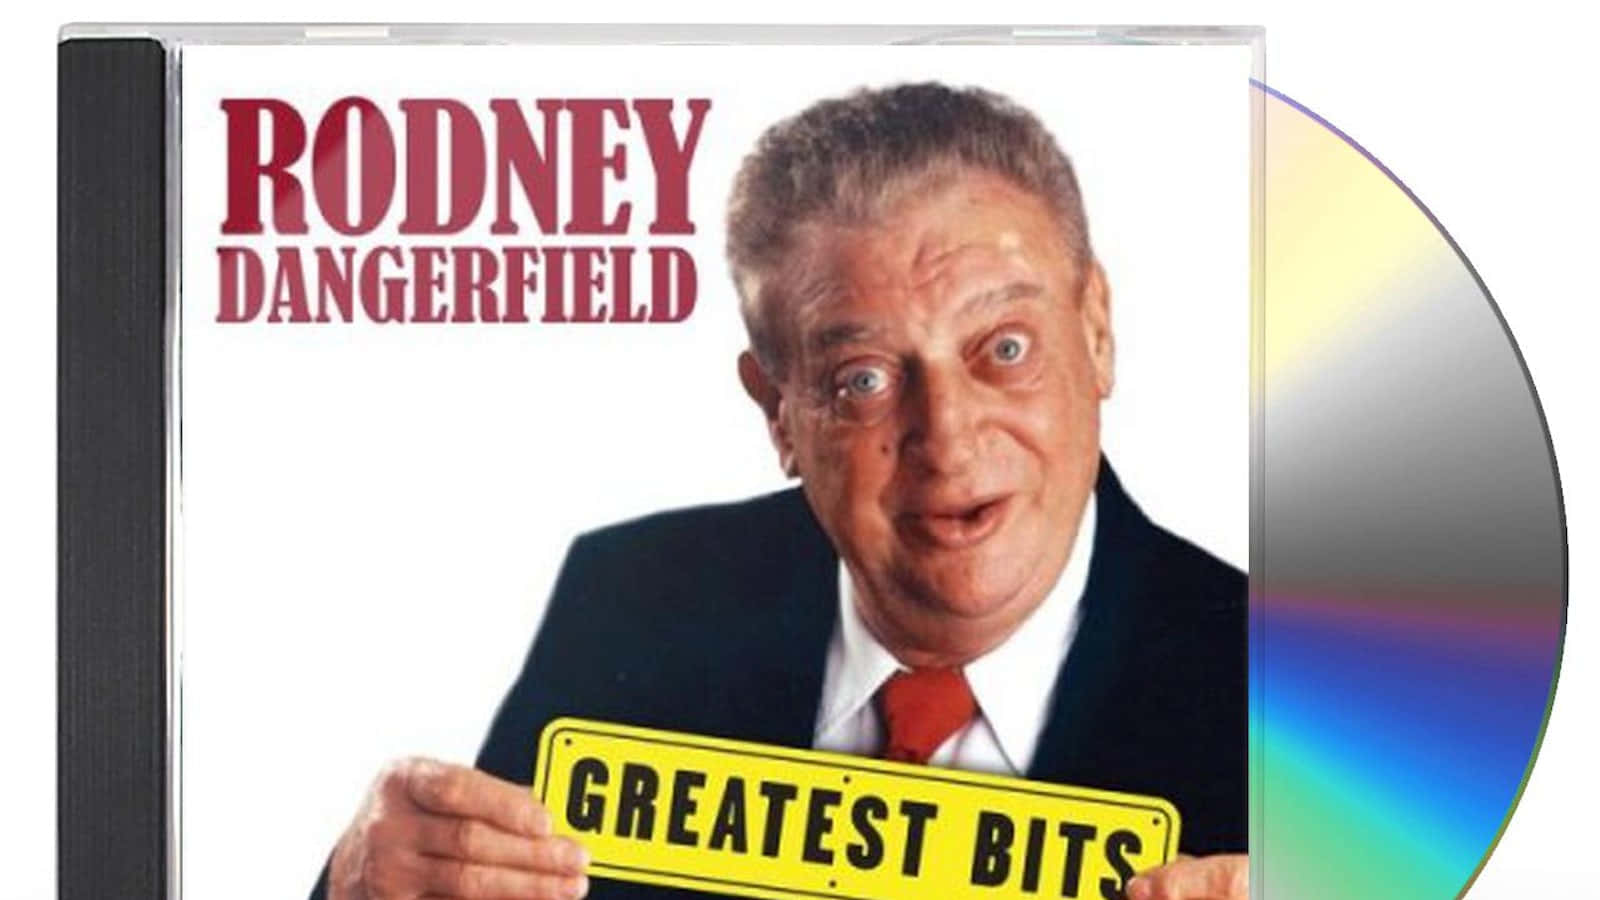 Rodney Dangerfield Greatest Bits CD Wallpaper